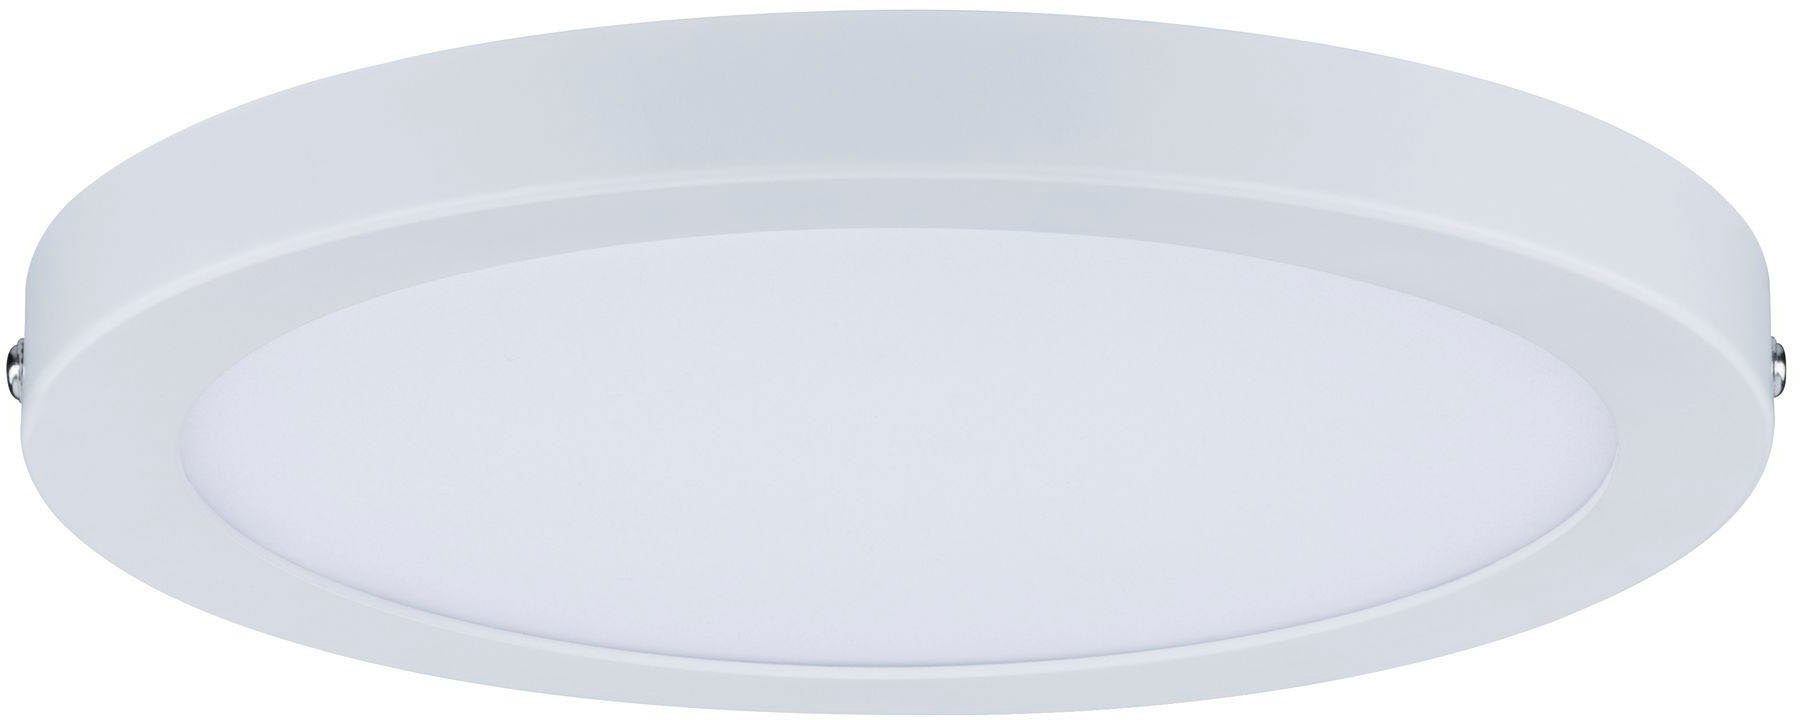 Paulmann LED Panel Weiß integriert, 14W 220mm fest Atria 2.700K matt, LED Atria matt 2.700K Weiß Warmweiß, 14W 220mm rund rund